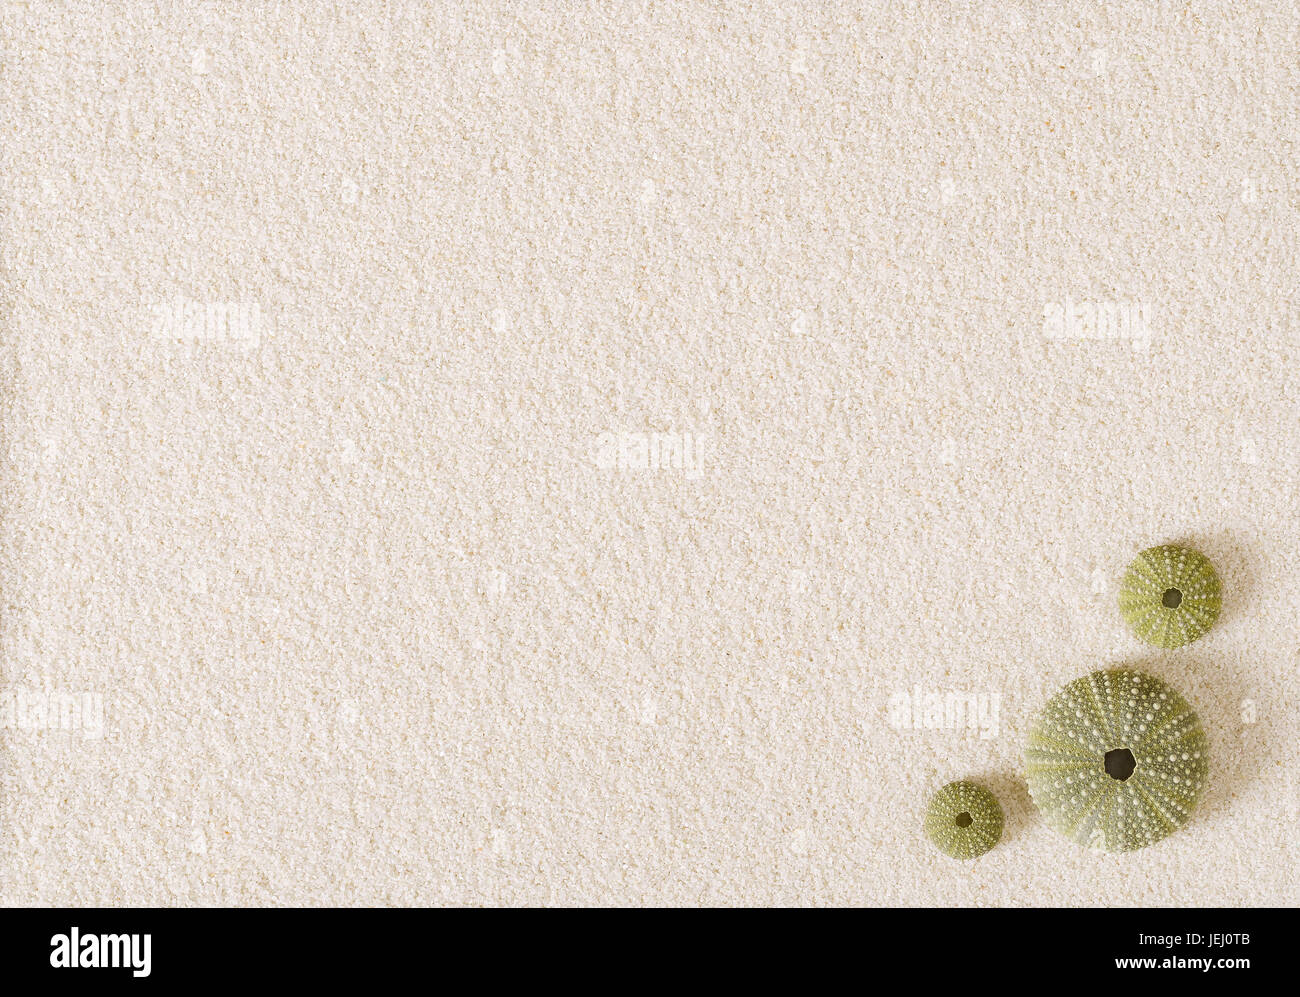 Tre verdi ricci di mare conchiglie sulla piana di sabbia bianca superficie. Ricci di mare con endoskeletons globulari. Psammechinus miliaris dal Mare Mediterraneo. Foto Stock